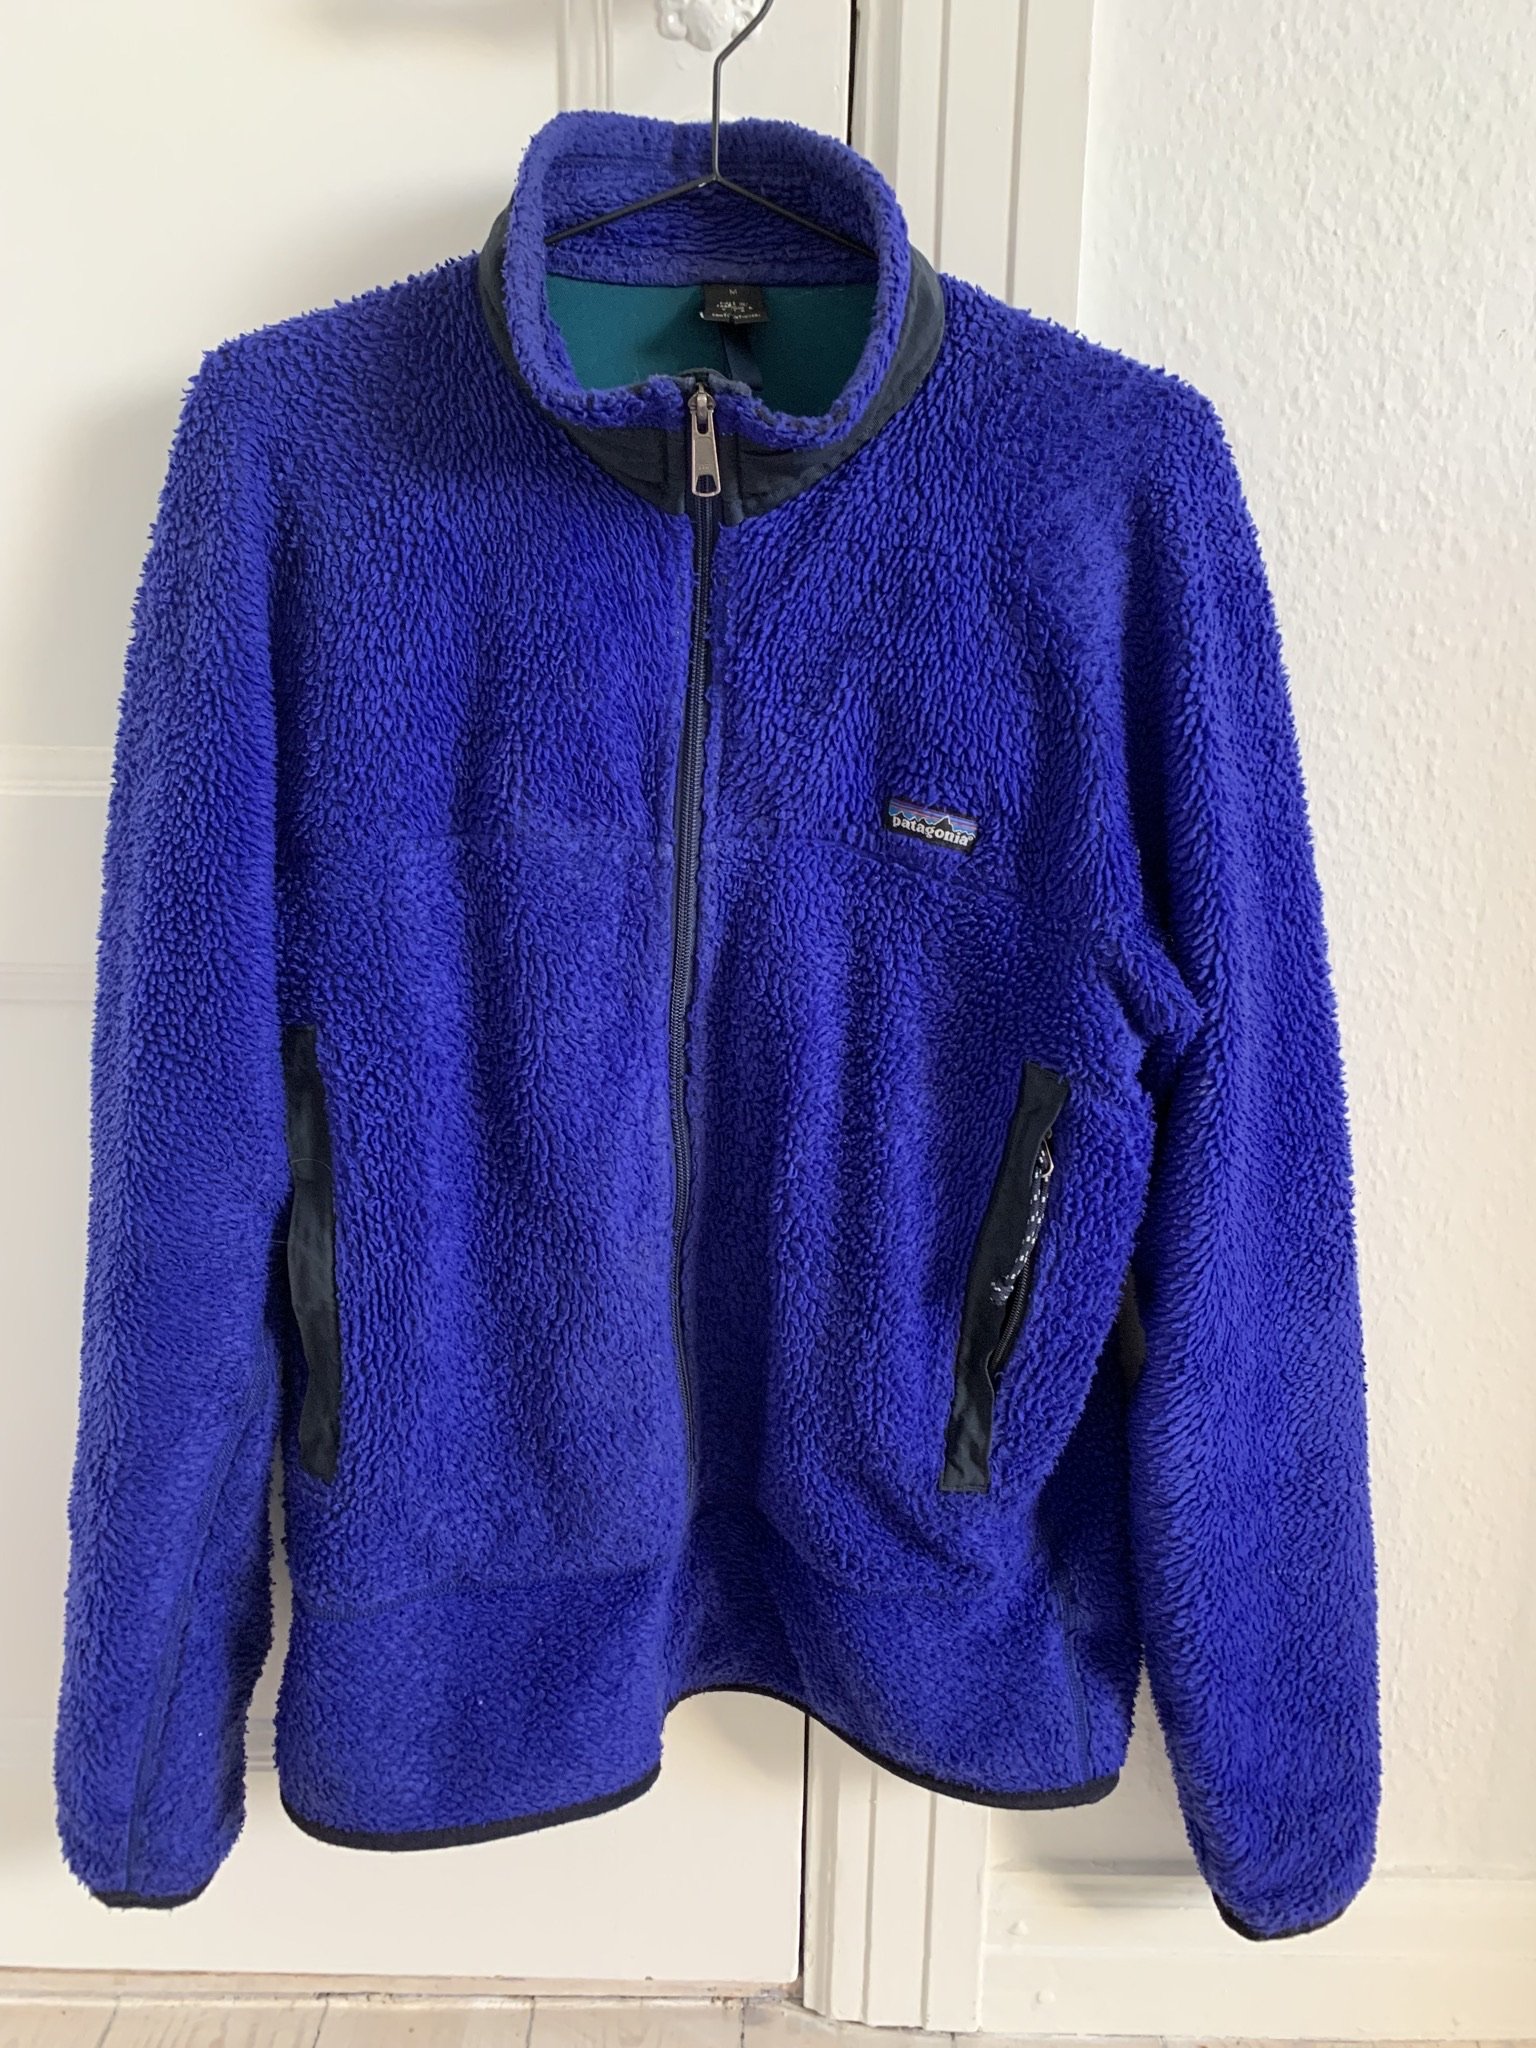 Patagonia jakke, 750 kr.